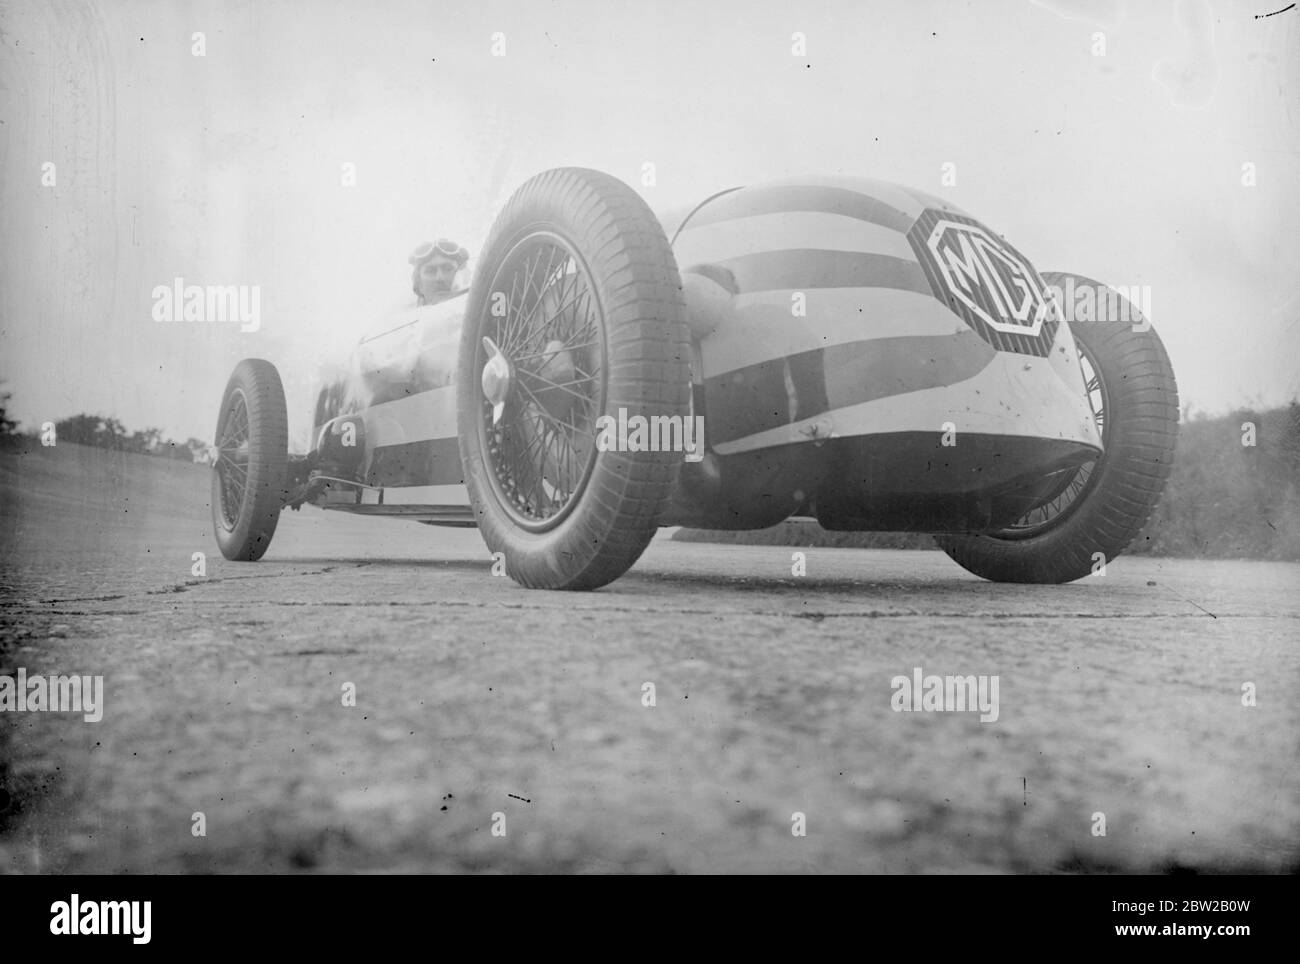 Le capitaine George Eyston, le célèbre pilote de course, teste sa nouvelle voiture de course à tête ogive Magnette géante sur le circuit de course Brooklands à Weybridge, Surrey, dans lequel il tentera d'établir un nouveau record du monde pour les voitures de 1100 cc. La voiture fait partie d'une équipe qui sera en compétition dans la course Empire Trophy et la course de 500 miles à Brooklands cette année. En roulant sur la piste, la voiture qui est rayée marron et jaune ressemble à une comète. [Garages Morris, MG] 20 avril 1934 Banque D'Images